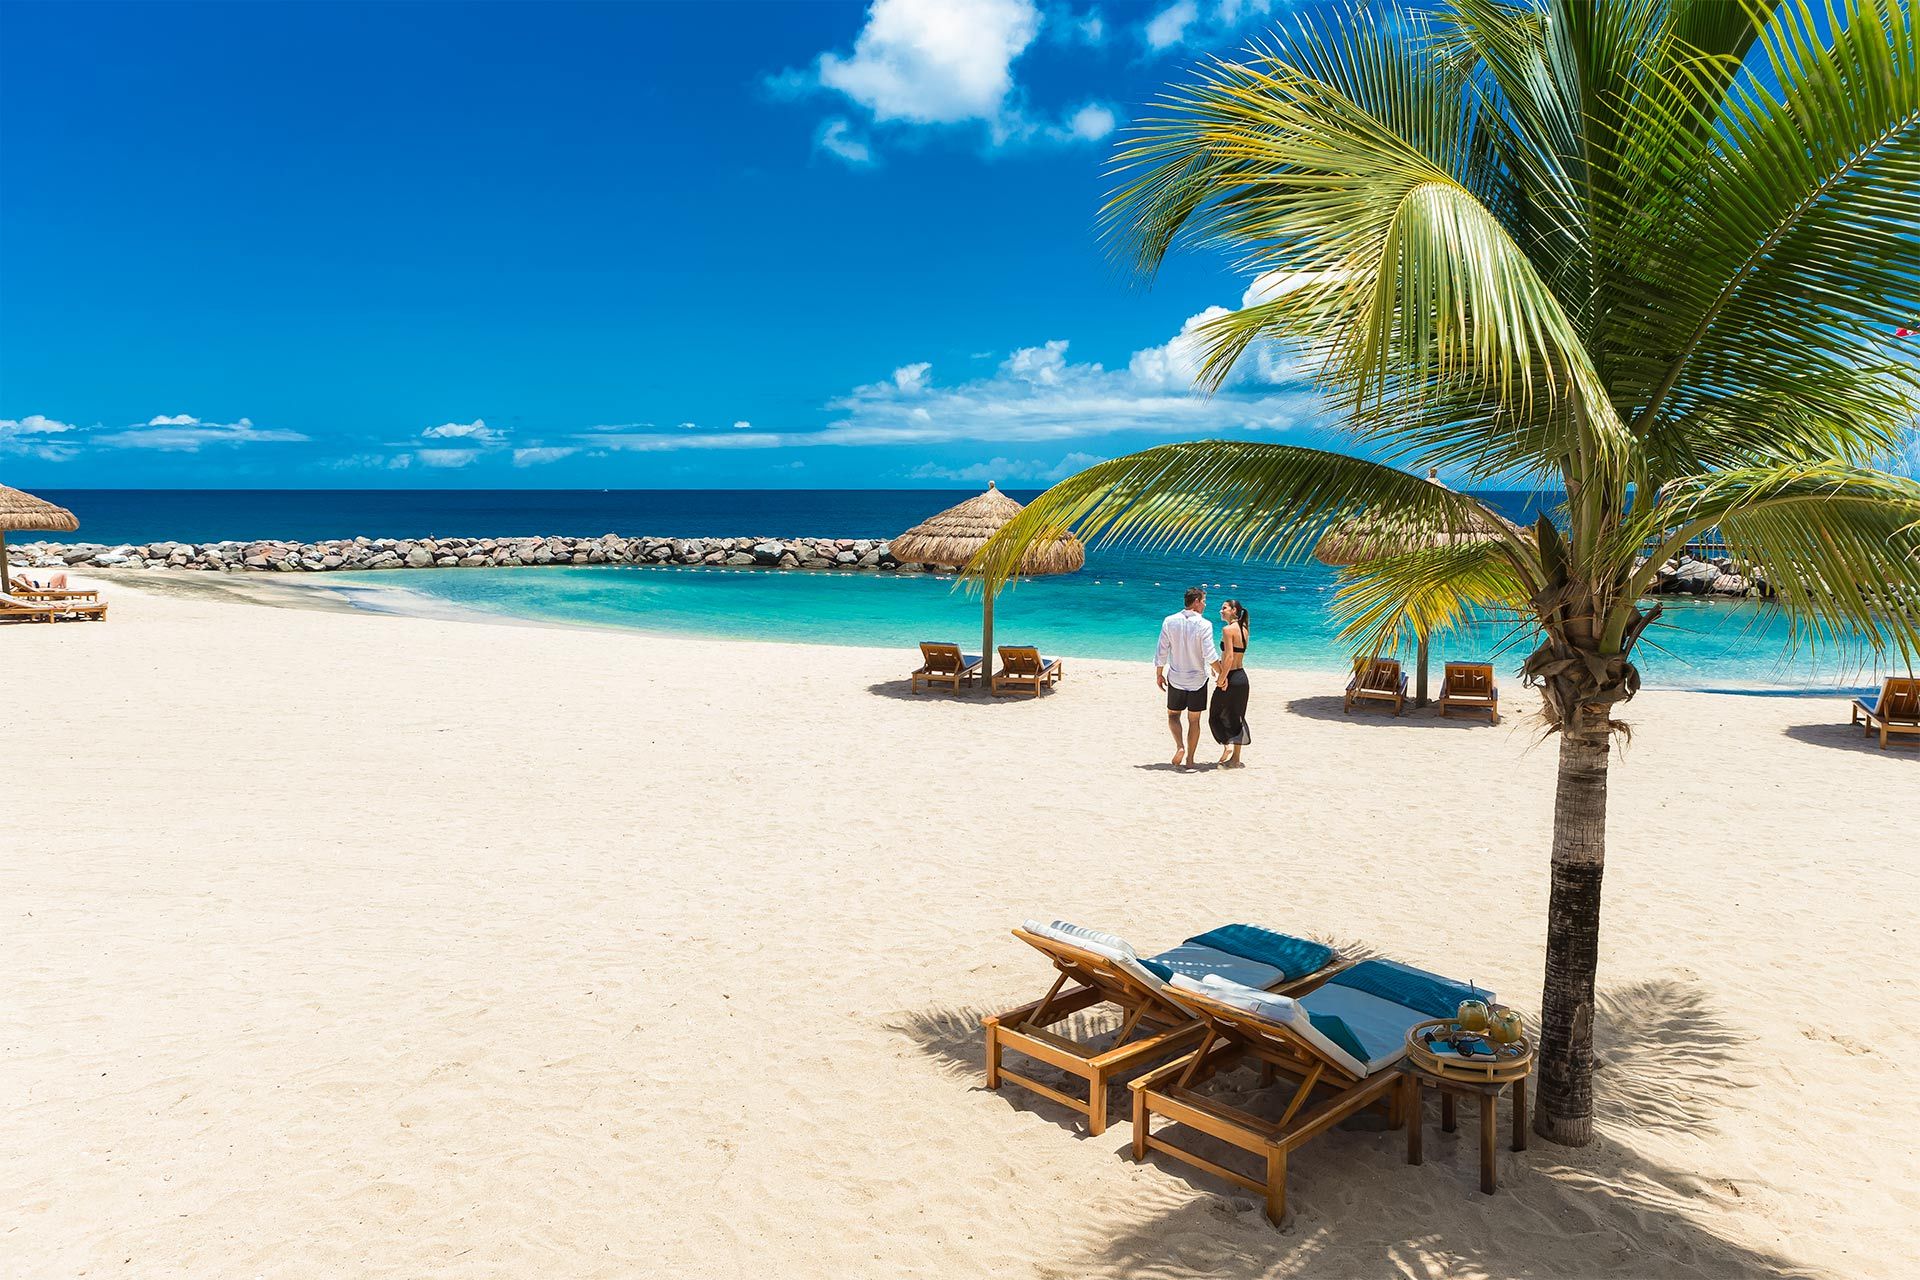 Beach at Sandals Grenada resort